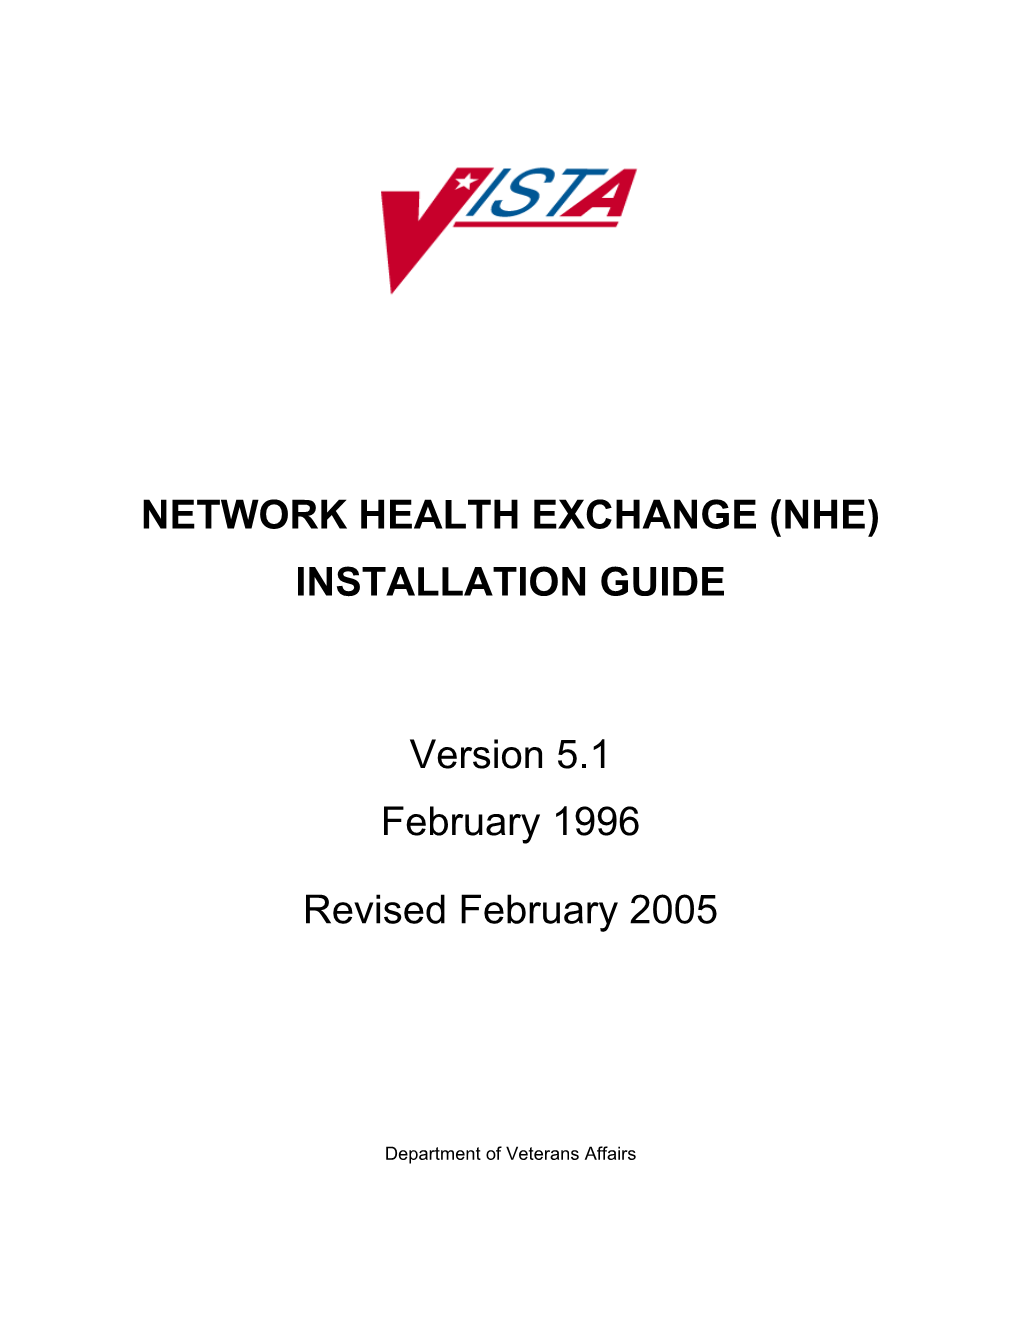 NHE Installation Guide V. 1.0